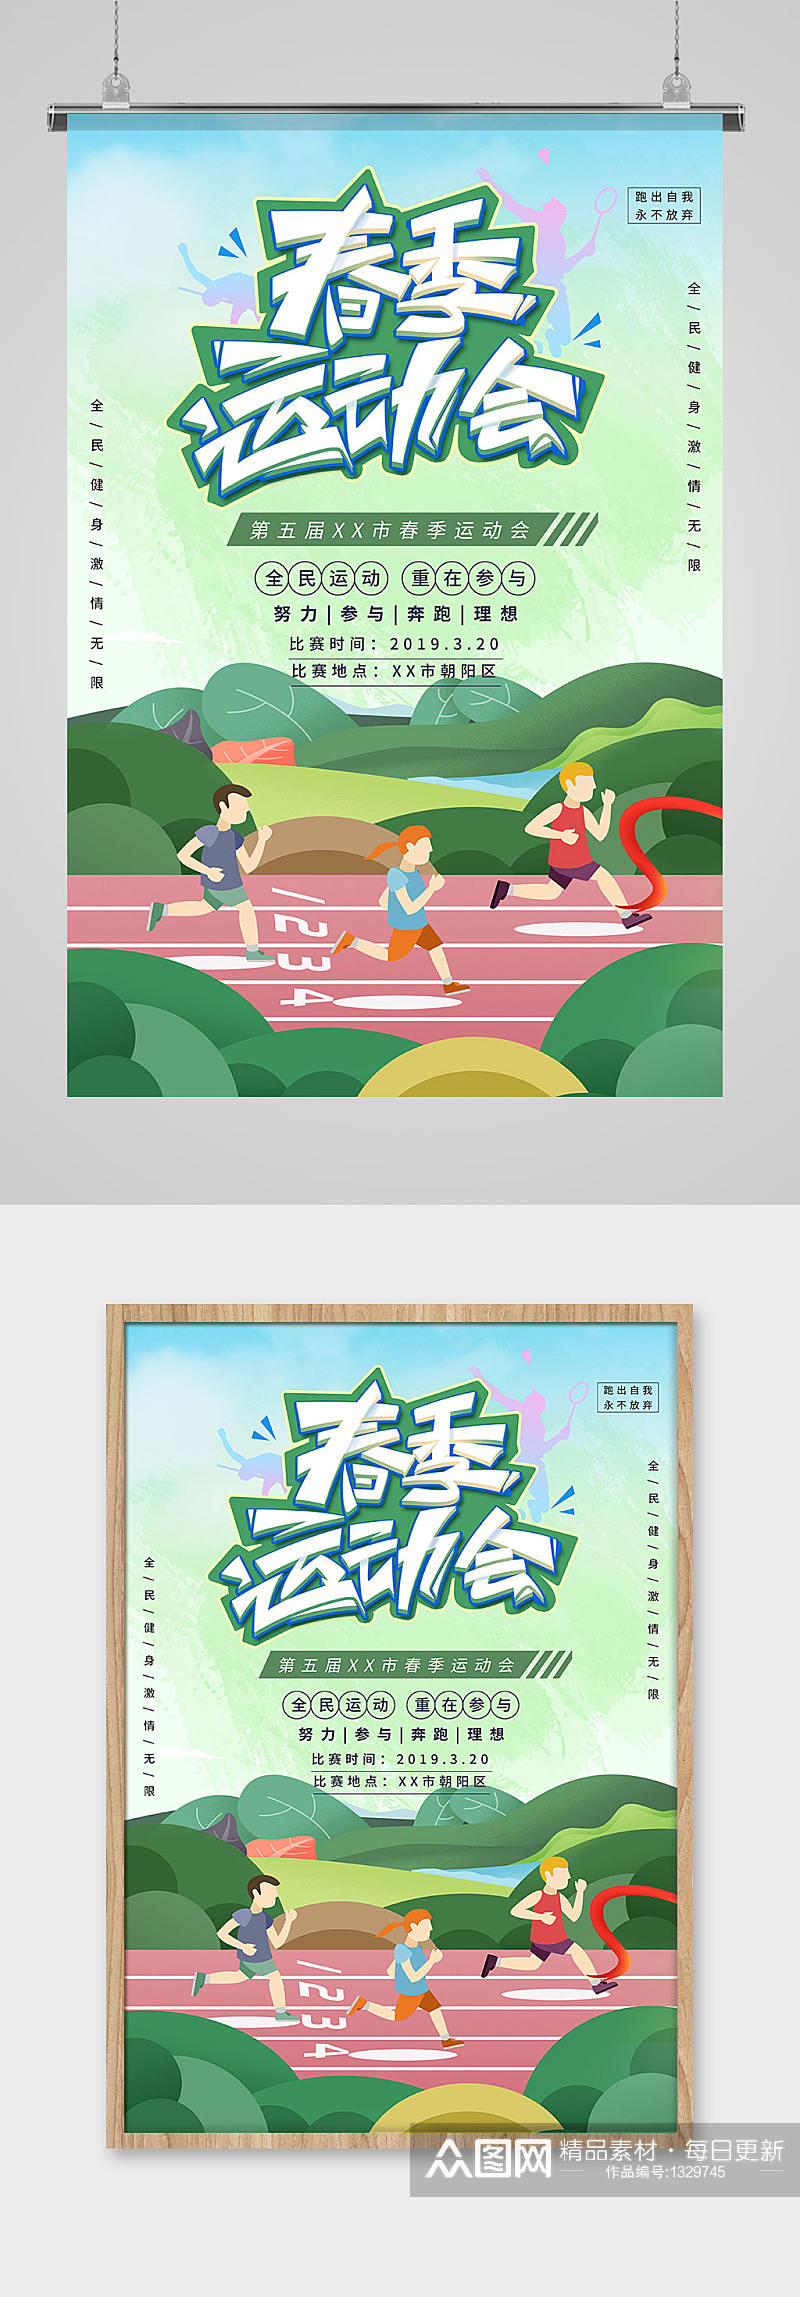 运动会赛道奔跑绿色插画海报素材